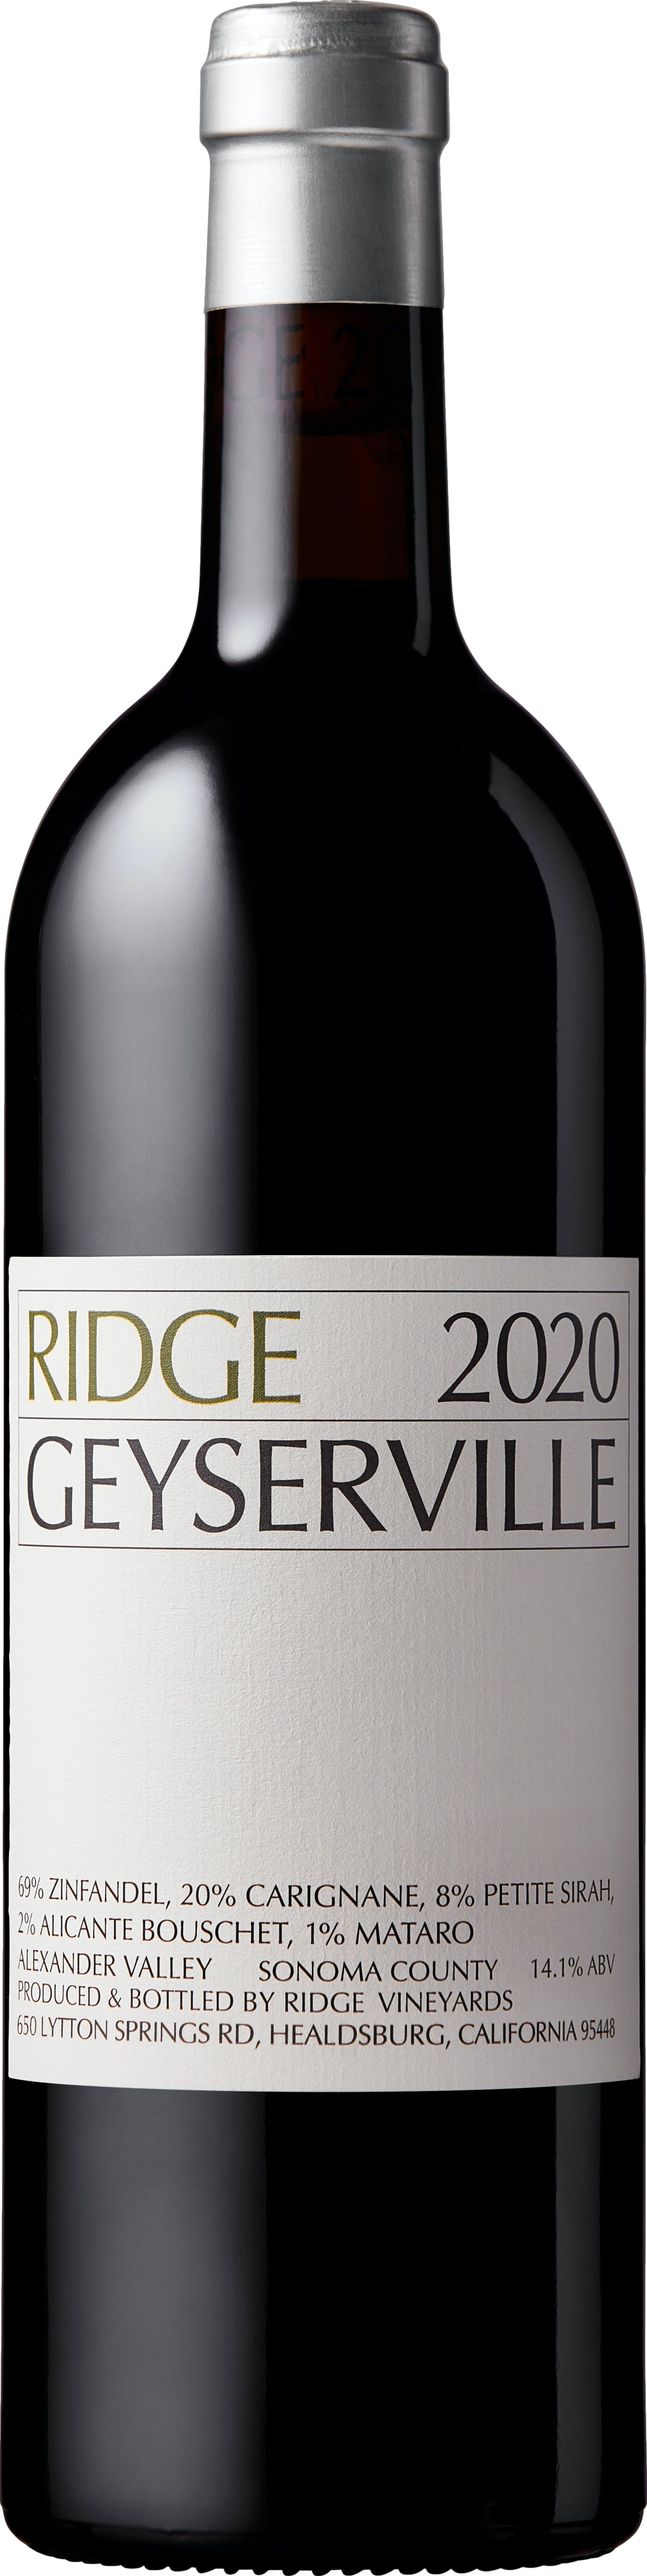 Ridge Geyserville 2020